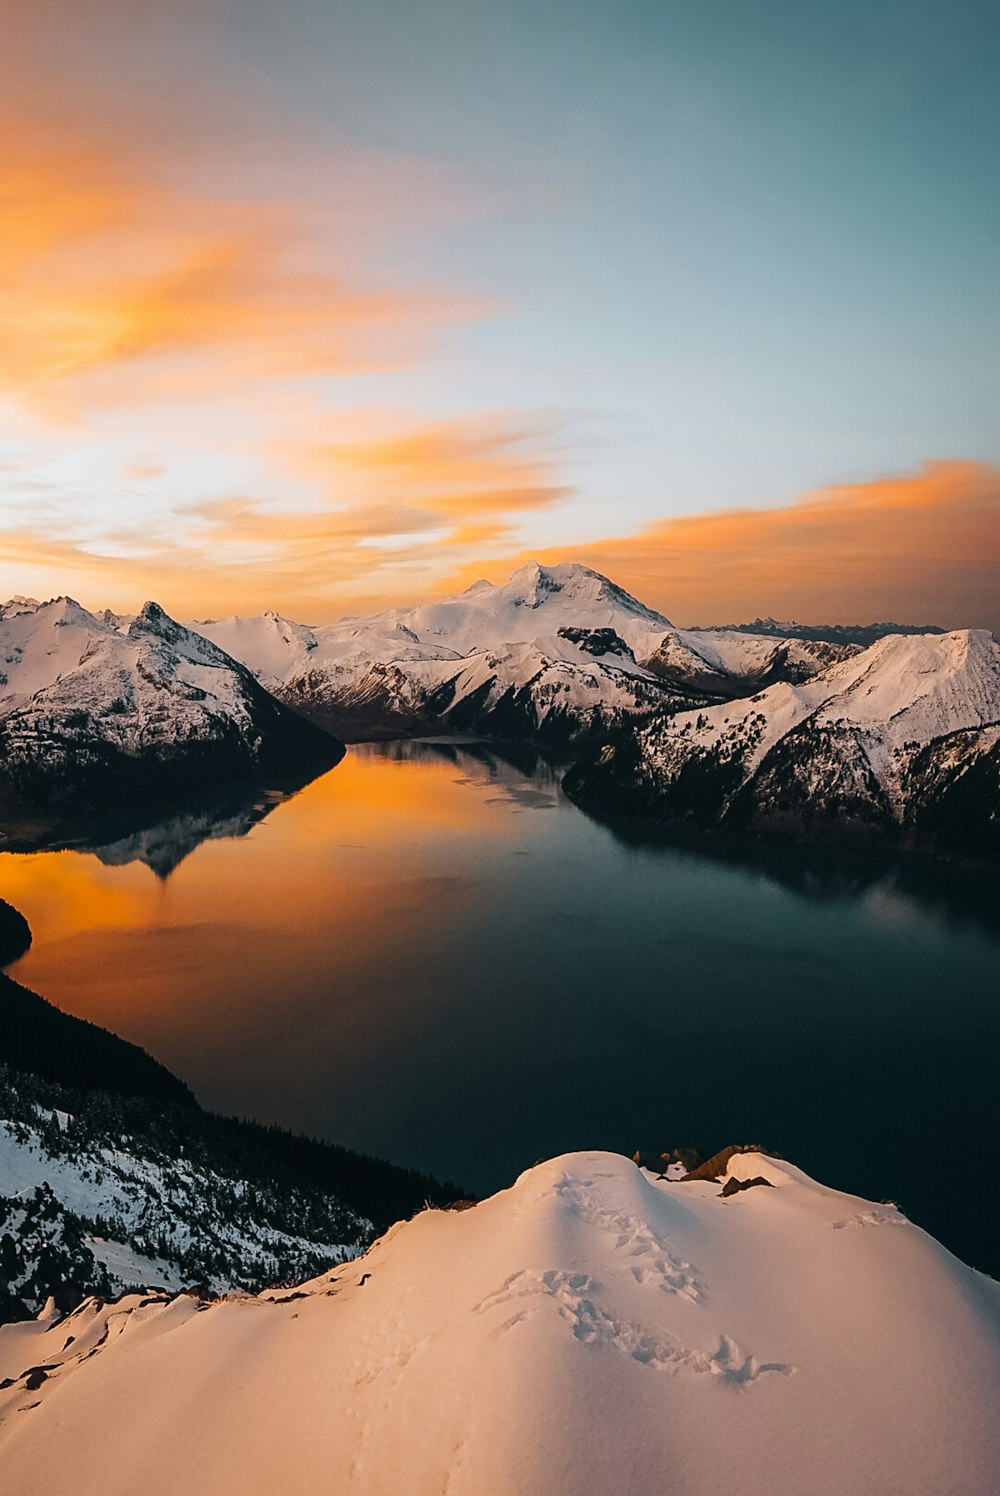 Una vista de un lago rodeado de montañas cubiertas de nieve